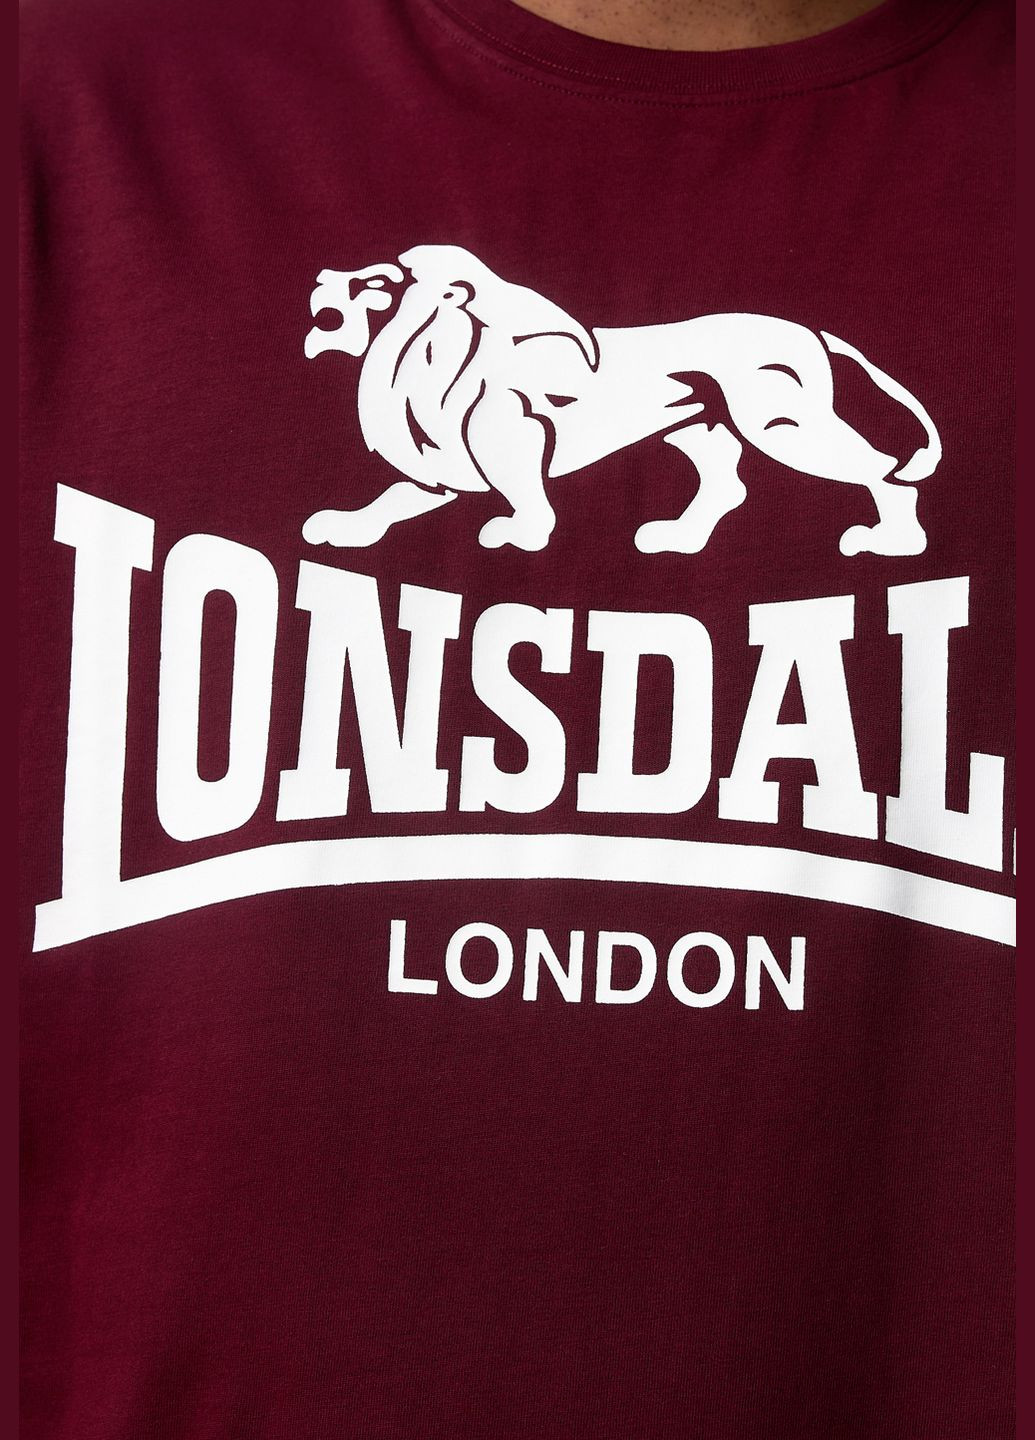 Комбинированная комплект 2 футболки Lonsdale Kelso